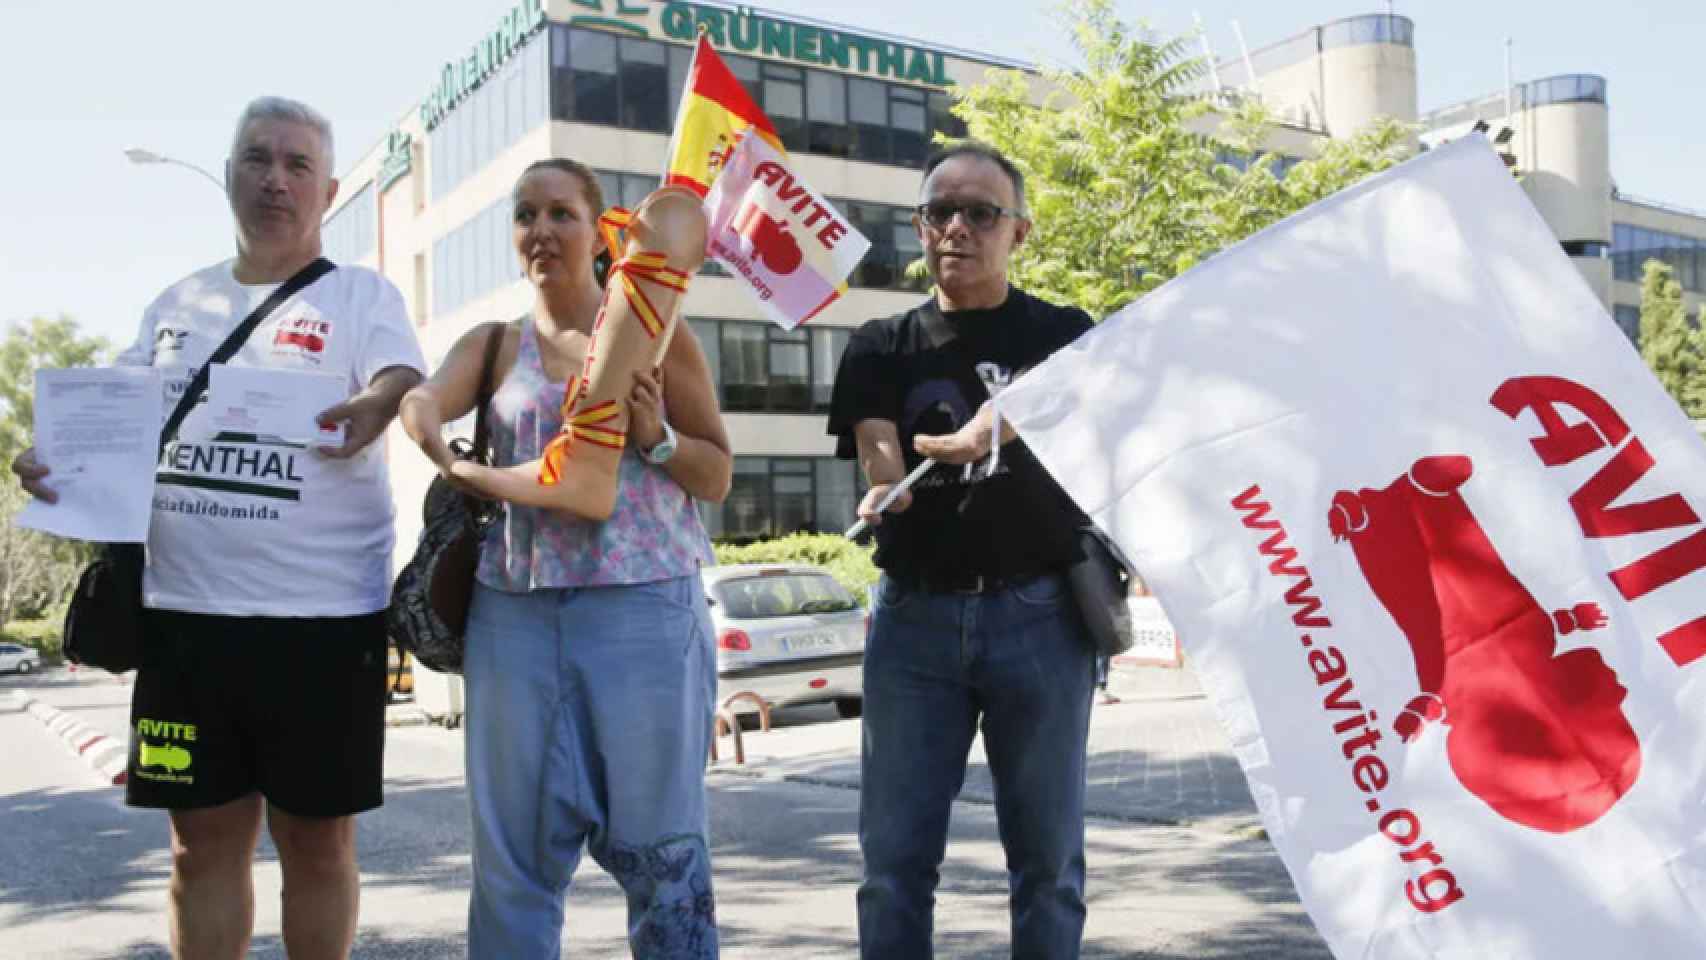 Una protesta de miembros de Avite frente a una de las sedes de la farmacéutica.